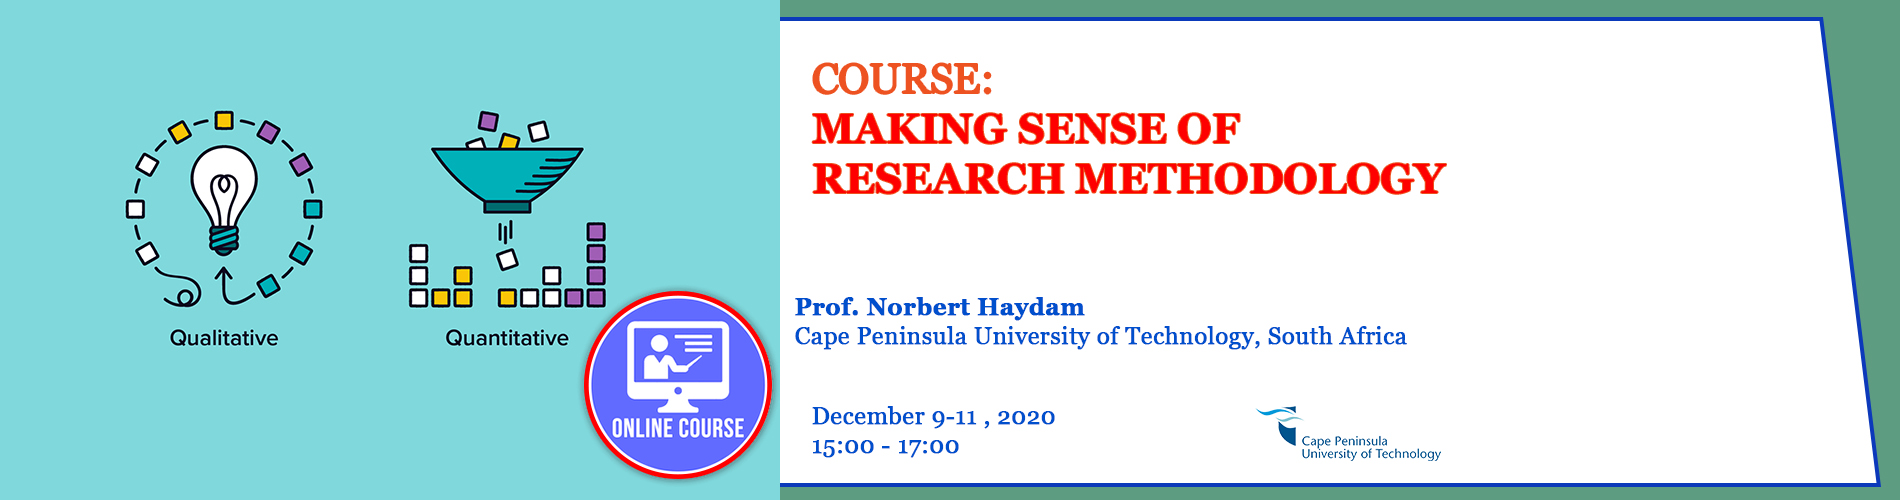 9.12.2020-Making Sense of Research Methodology